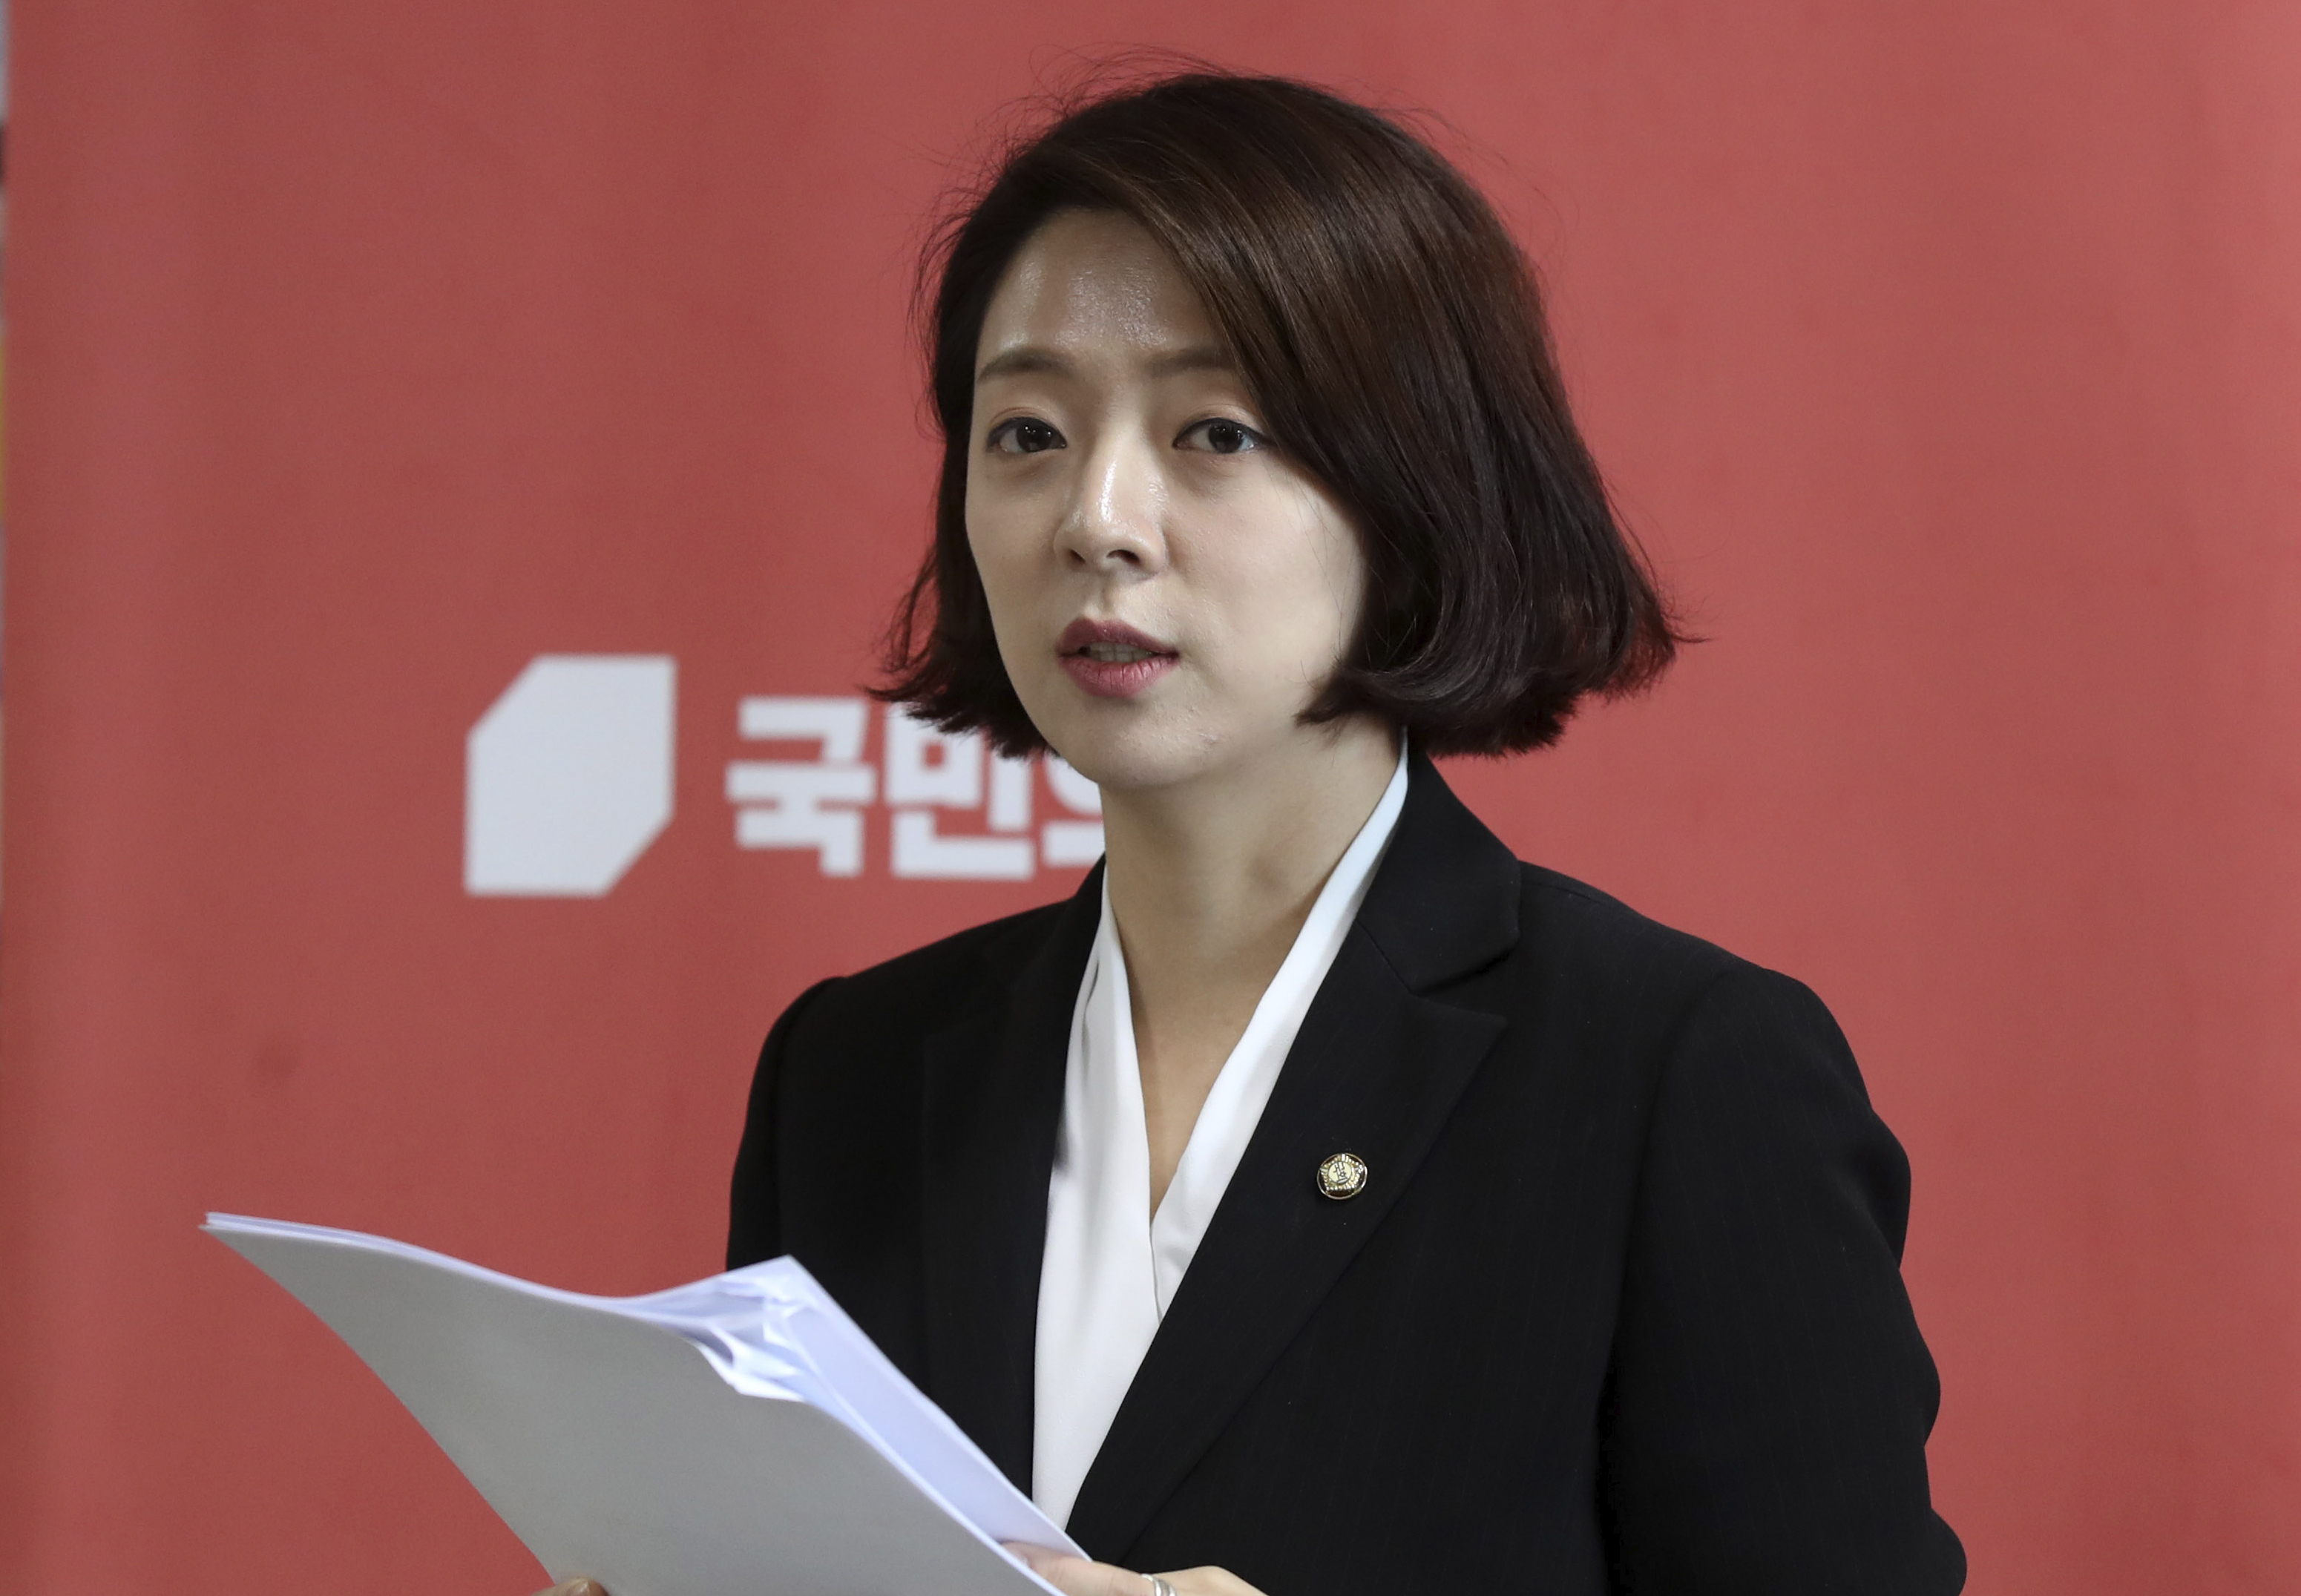 sørkoreansk politiker ikke livstruende skadd i angrep